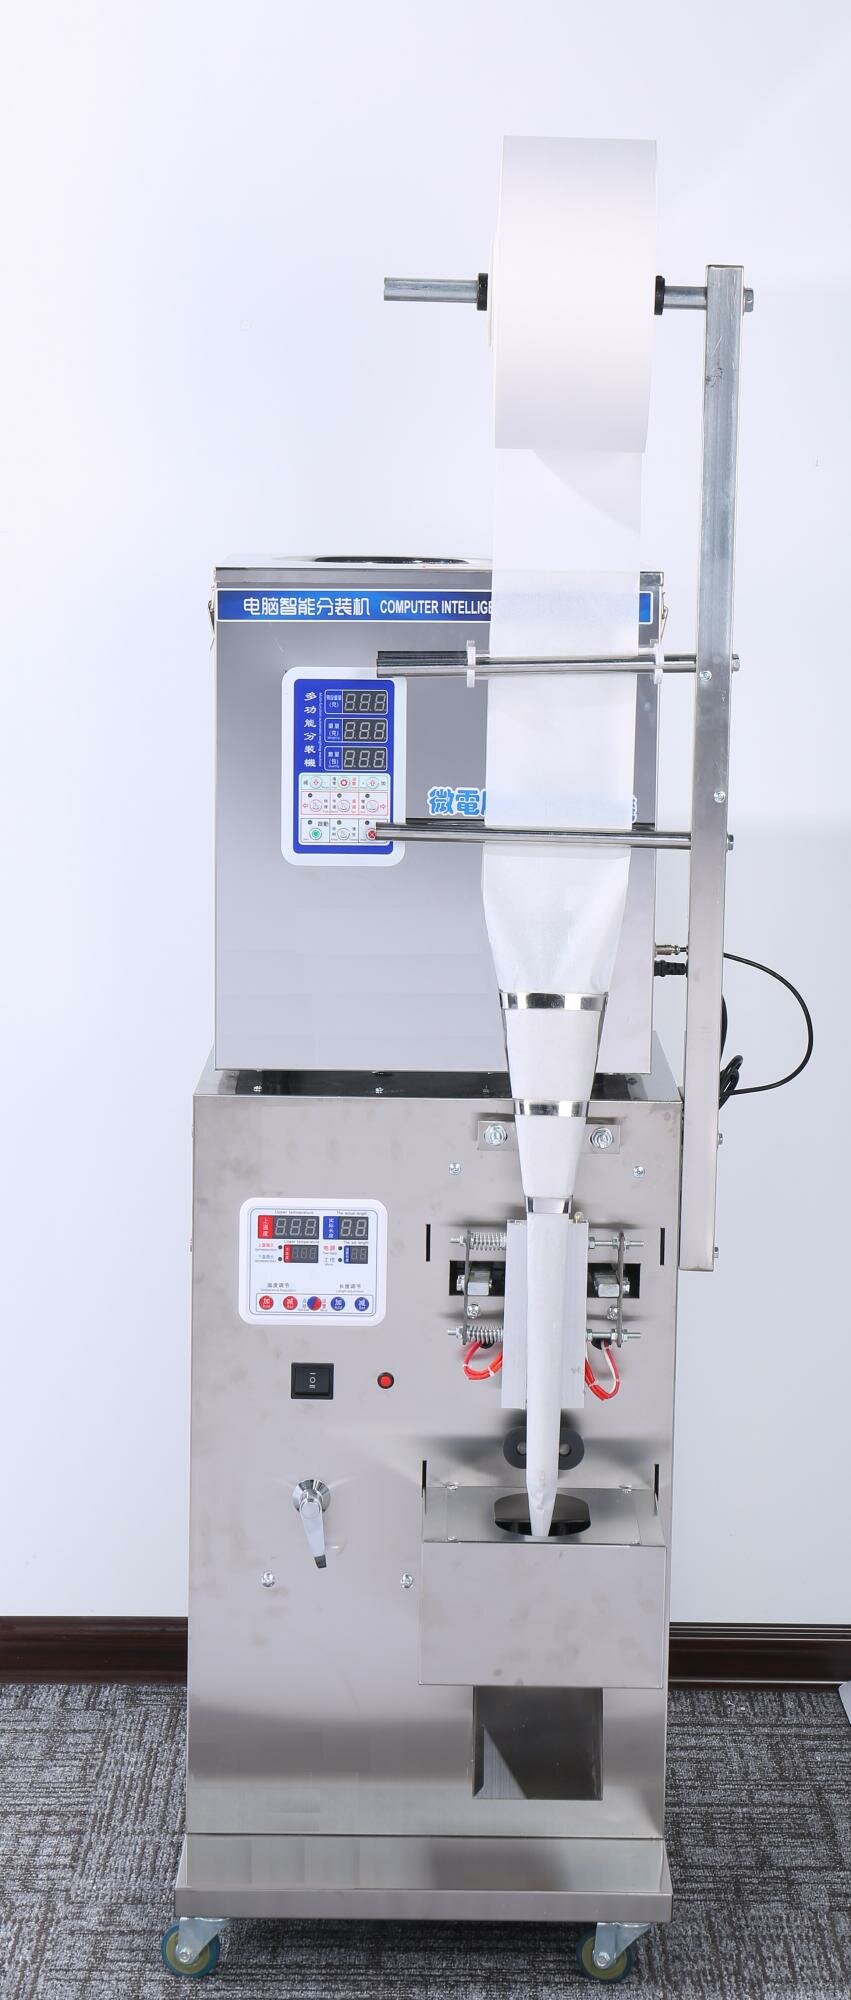 Автомат фасовочно-упаковочный MAGIKON AVWB500I - Раздел: Упаковка оптом, упаковочное оборудование